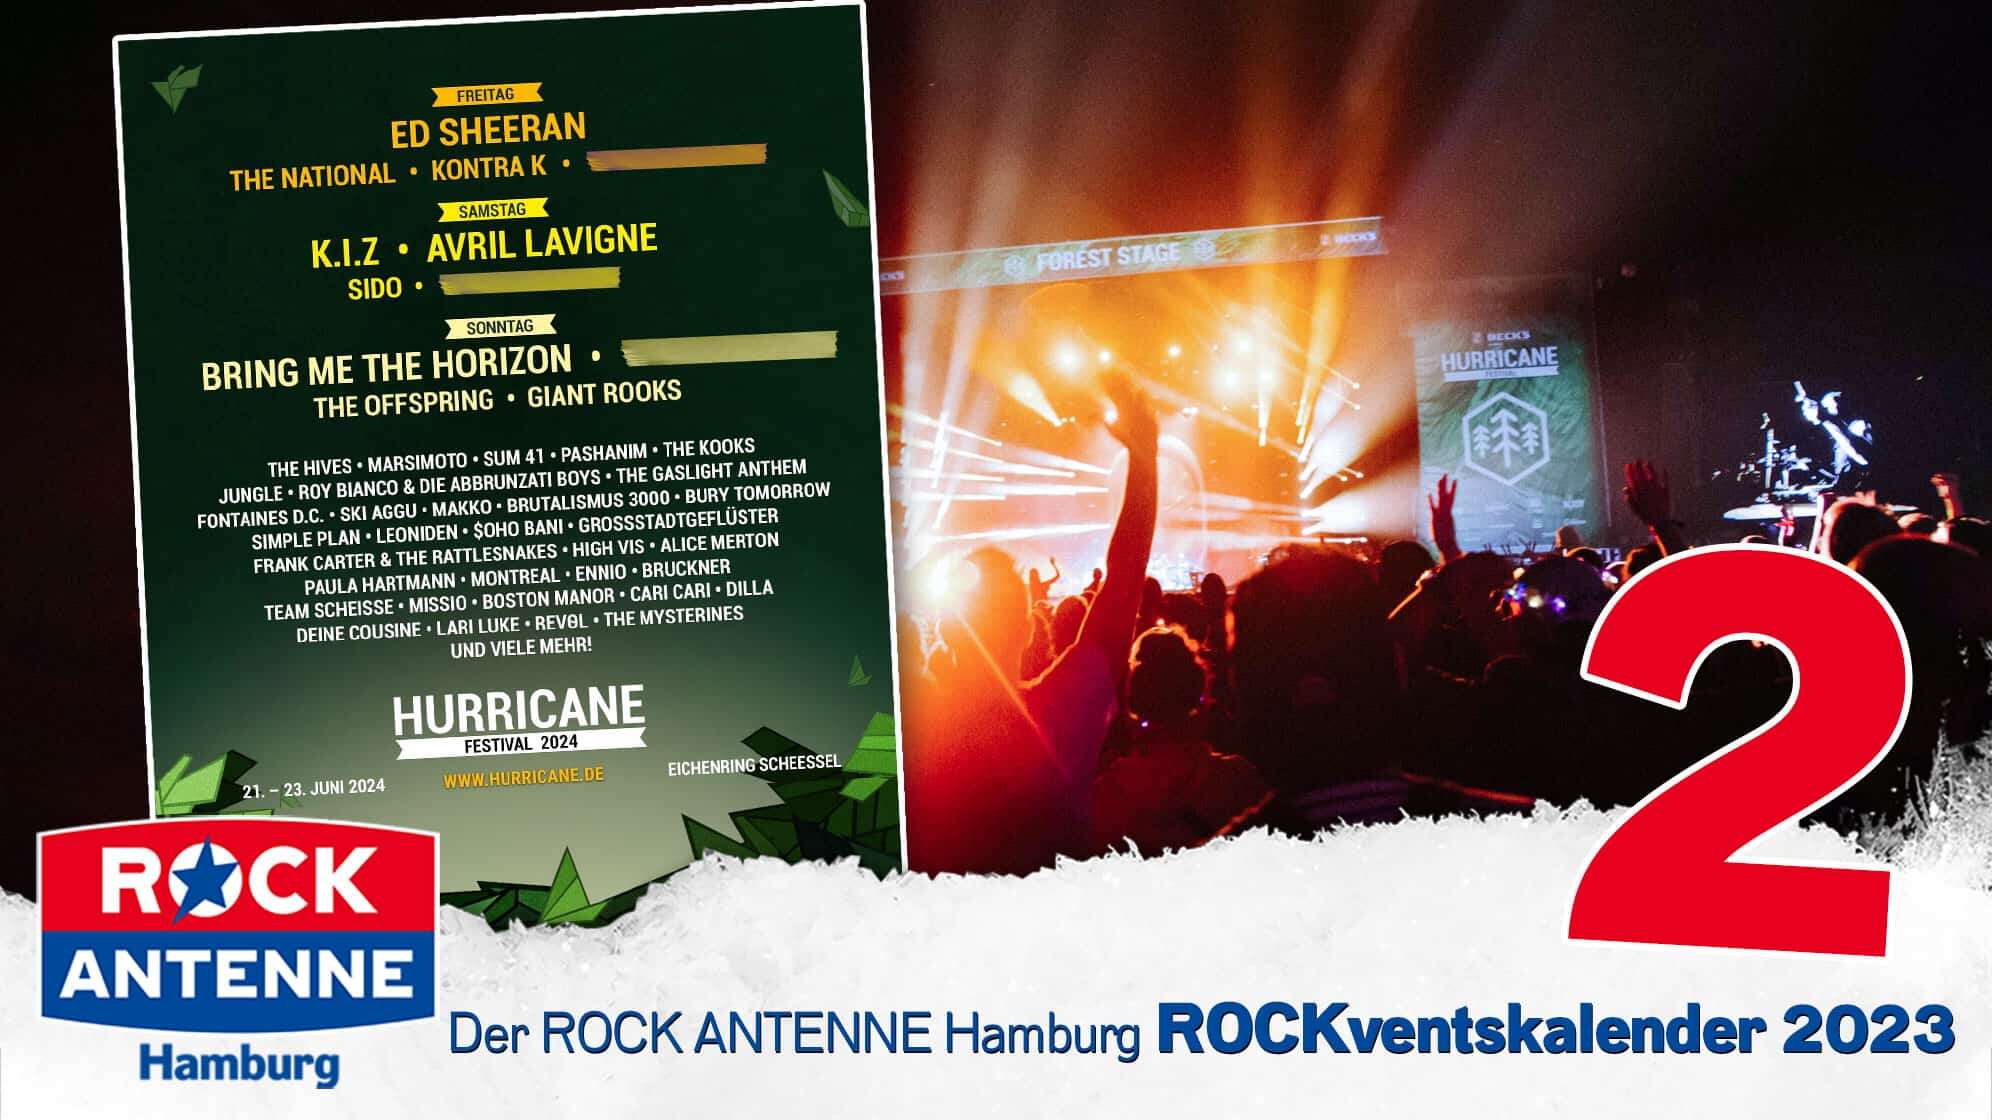 ROCK ANTENNE Hamburg ROCKventskalender Türchen 2: 2 Festivaltickets für das Hurricane Festival 2024